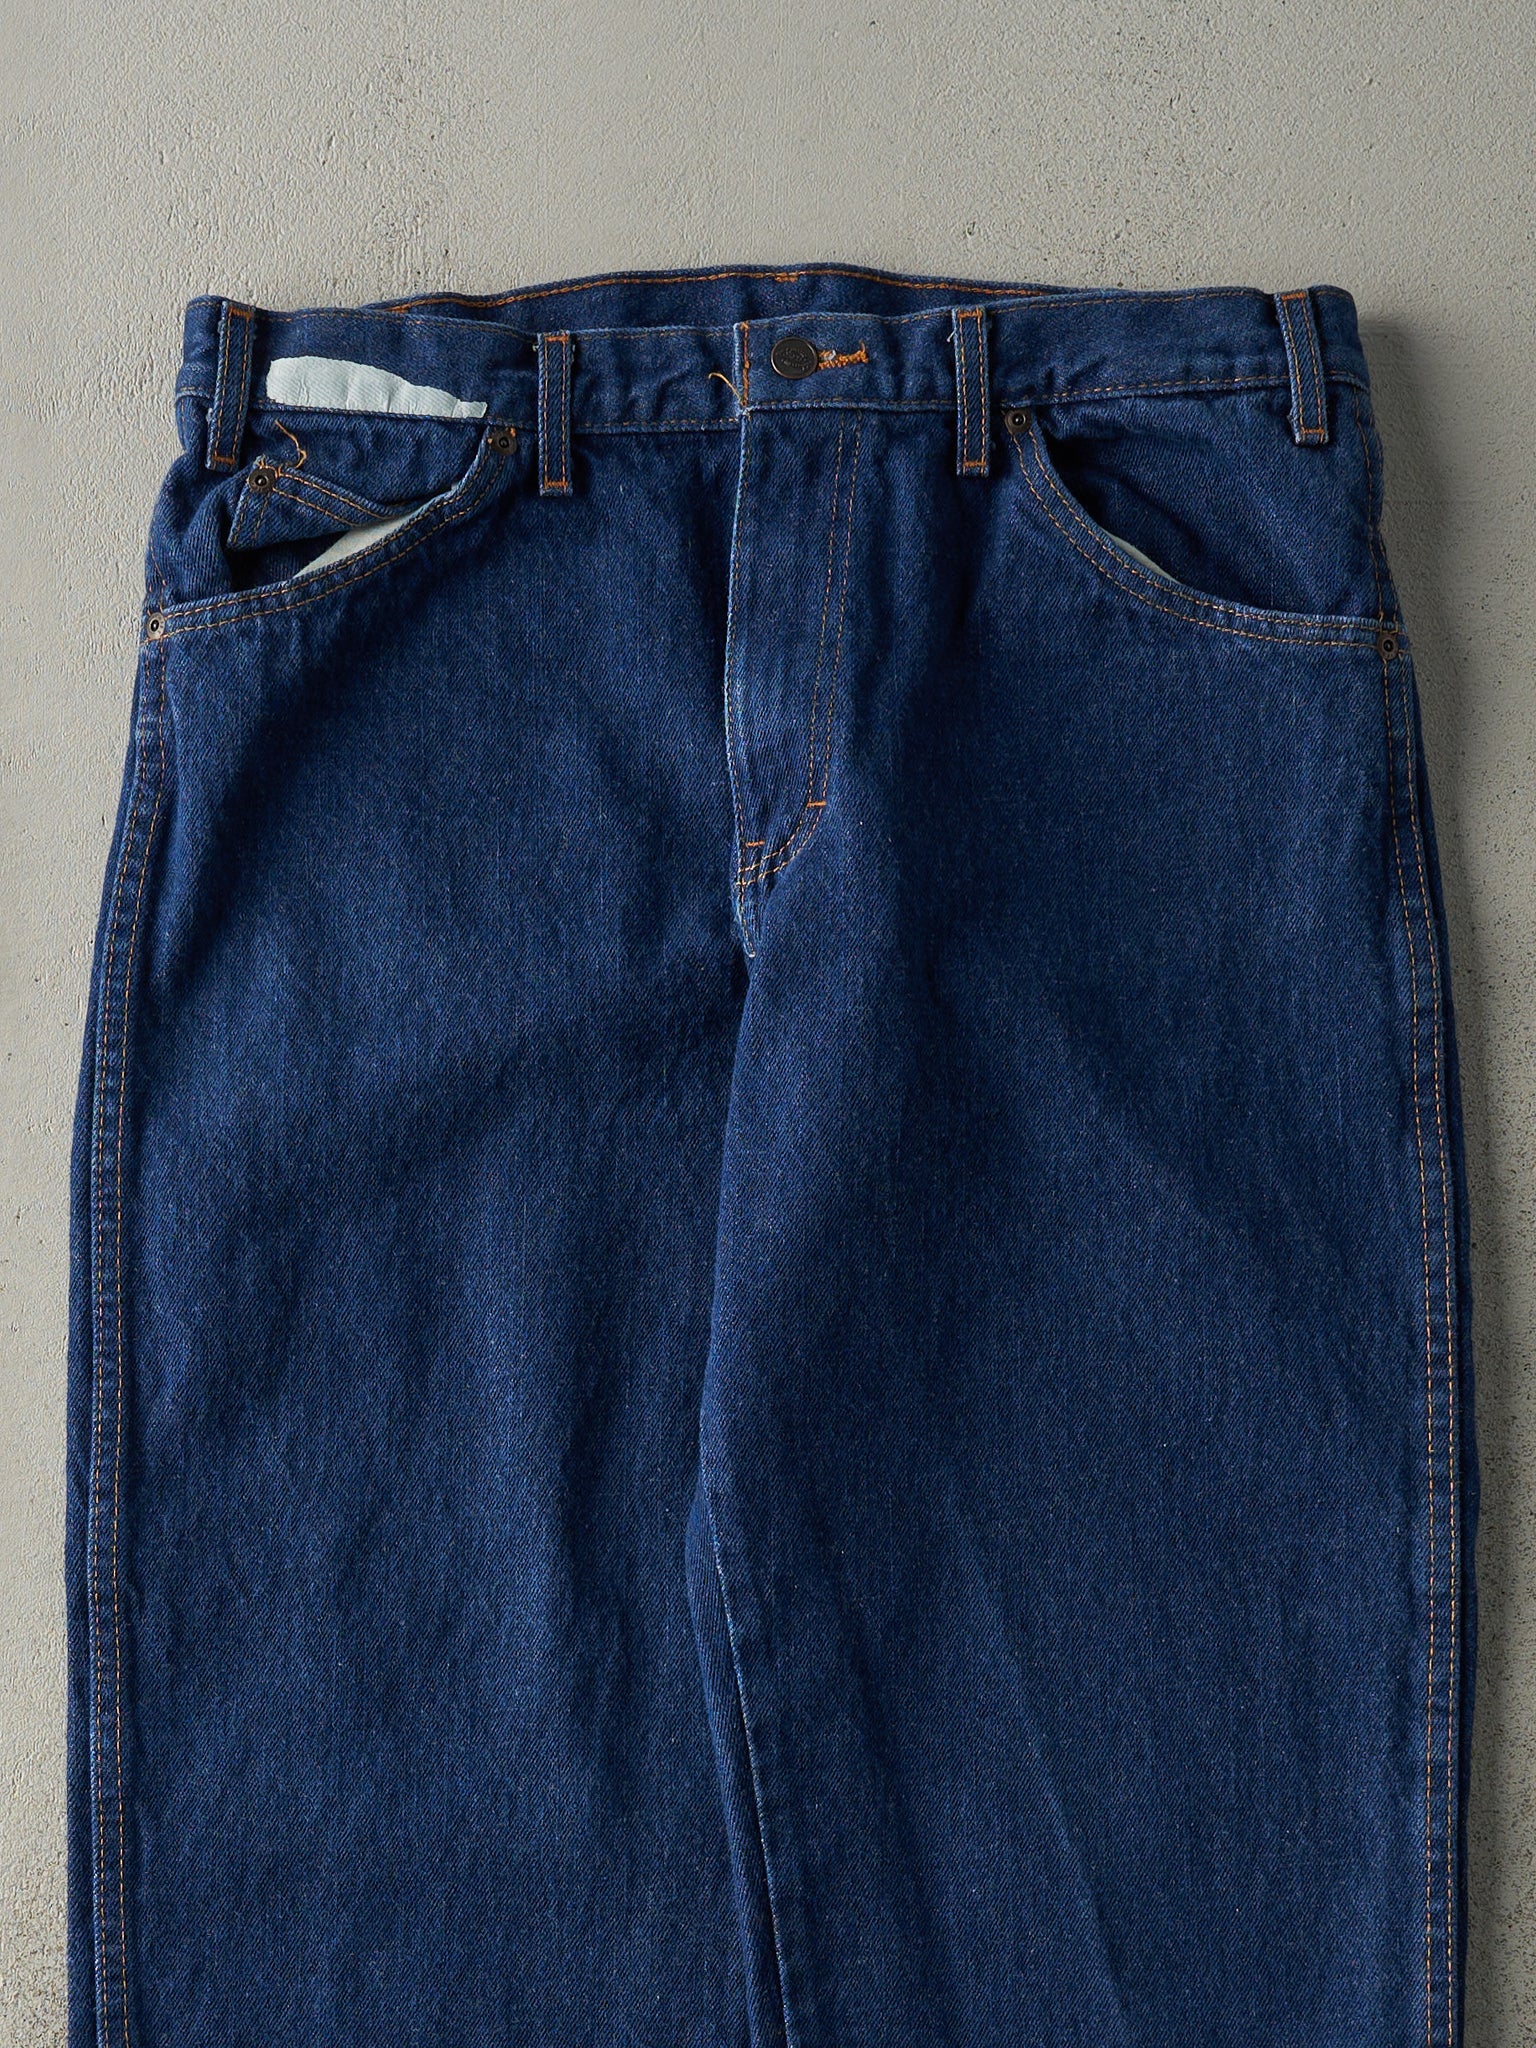 Vintage 90s Dark Wash Dickies Jeans (34x30)